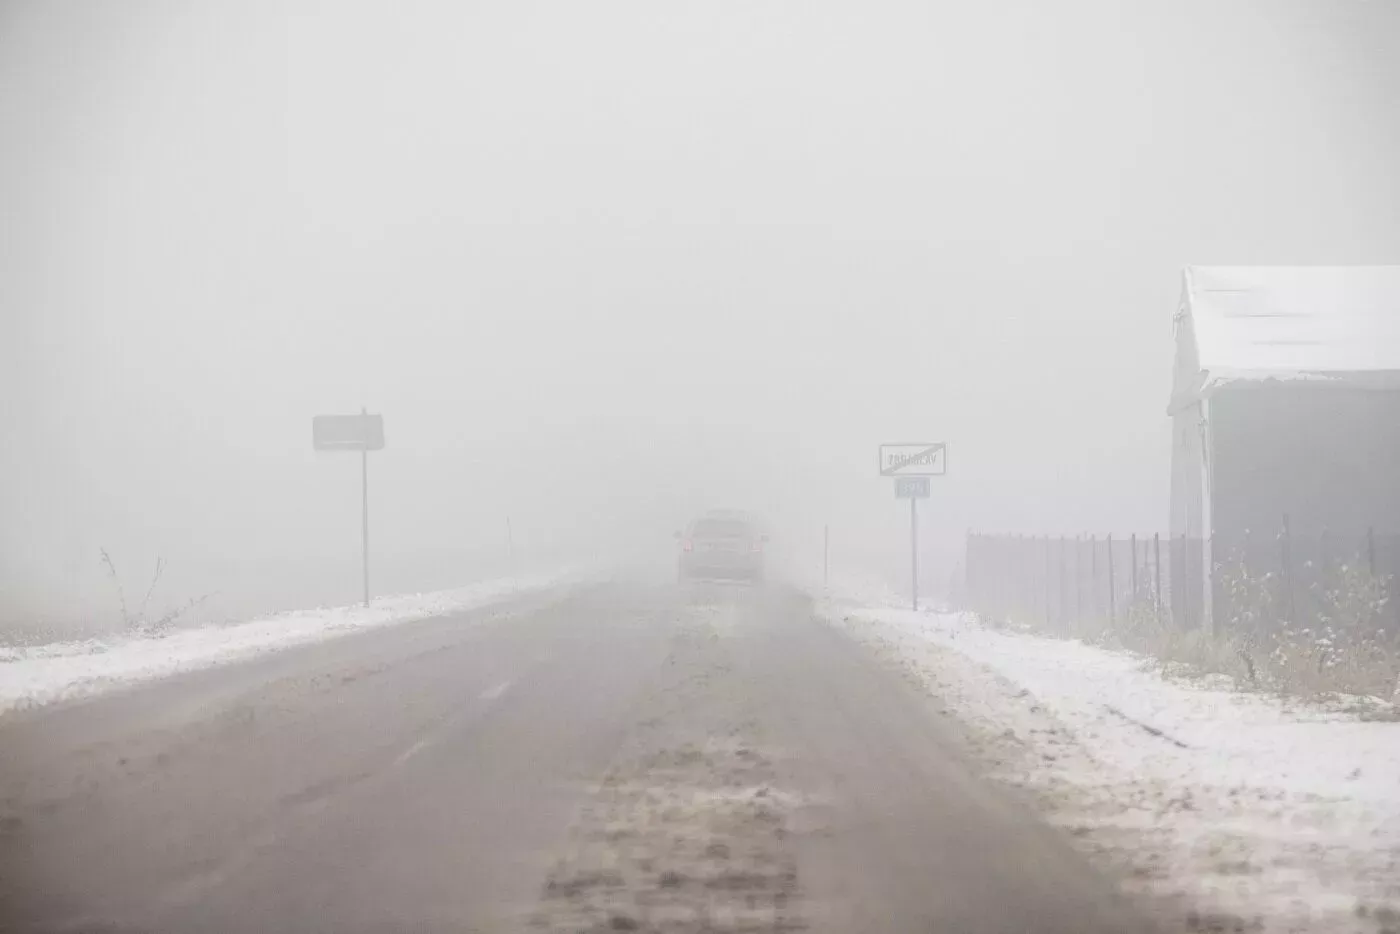 Zimní počasí v Česku, mráz trápí chodce i řidiče